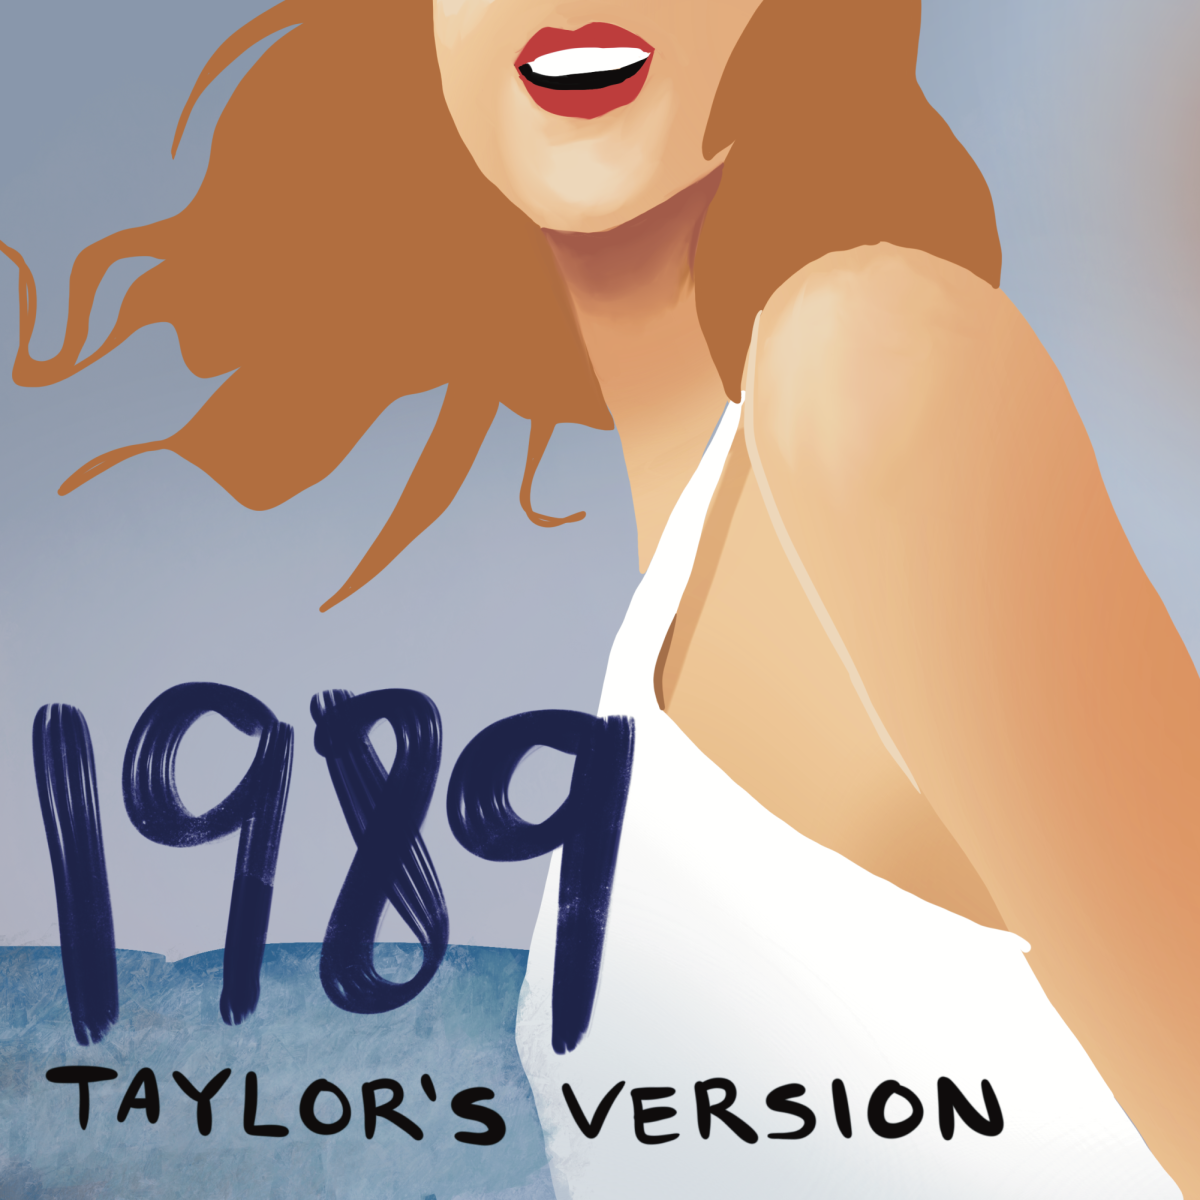 “1989 (Taylor’s Version)” outshines the original